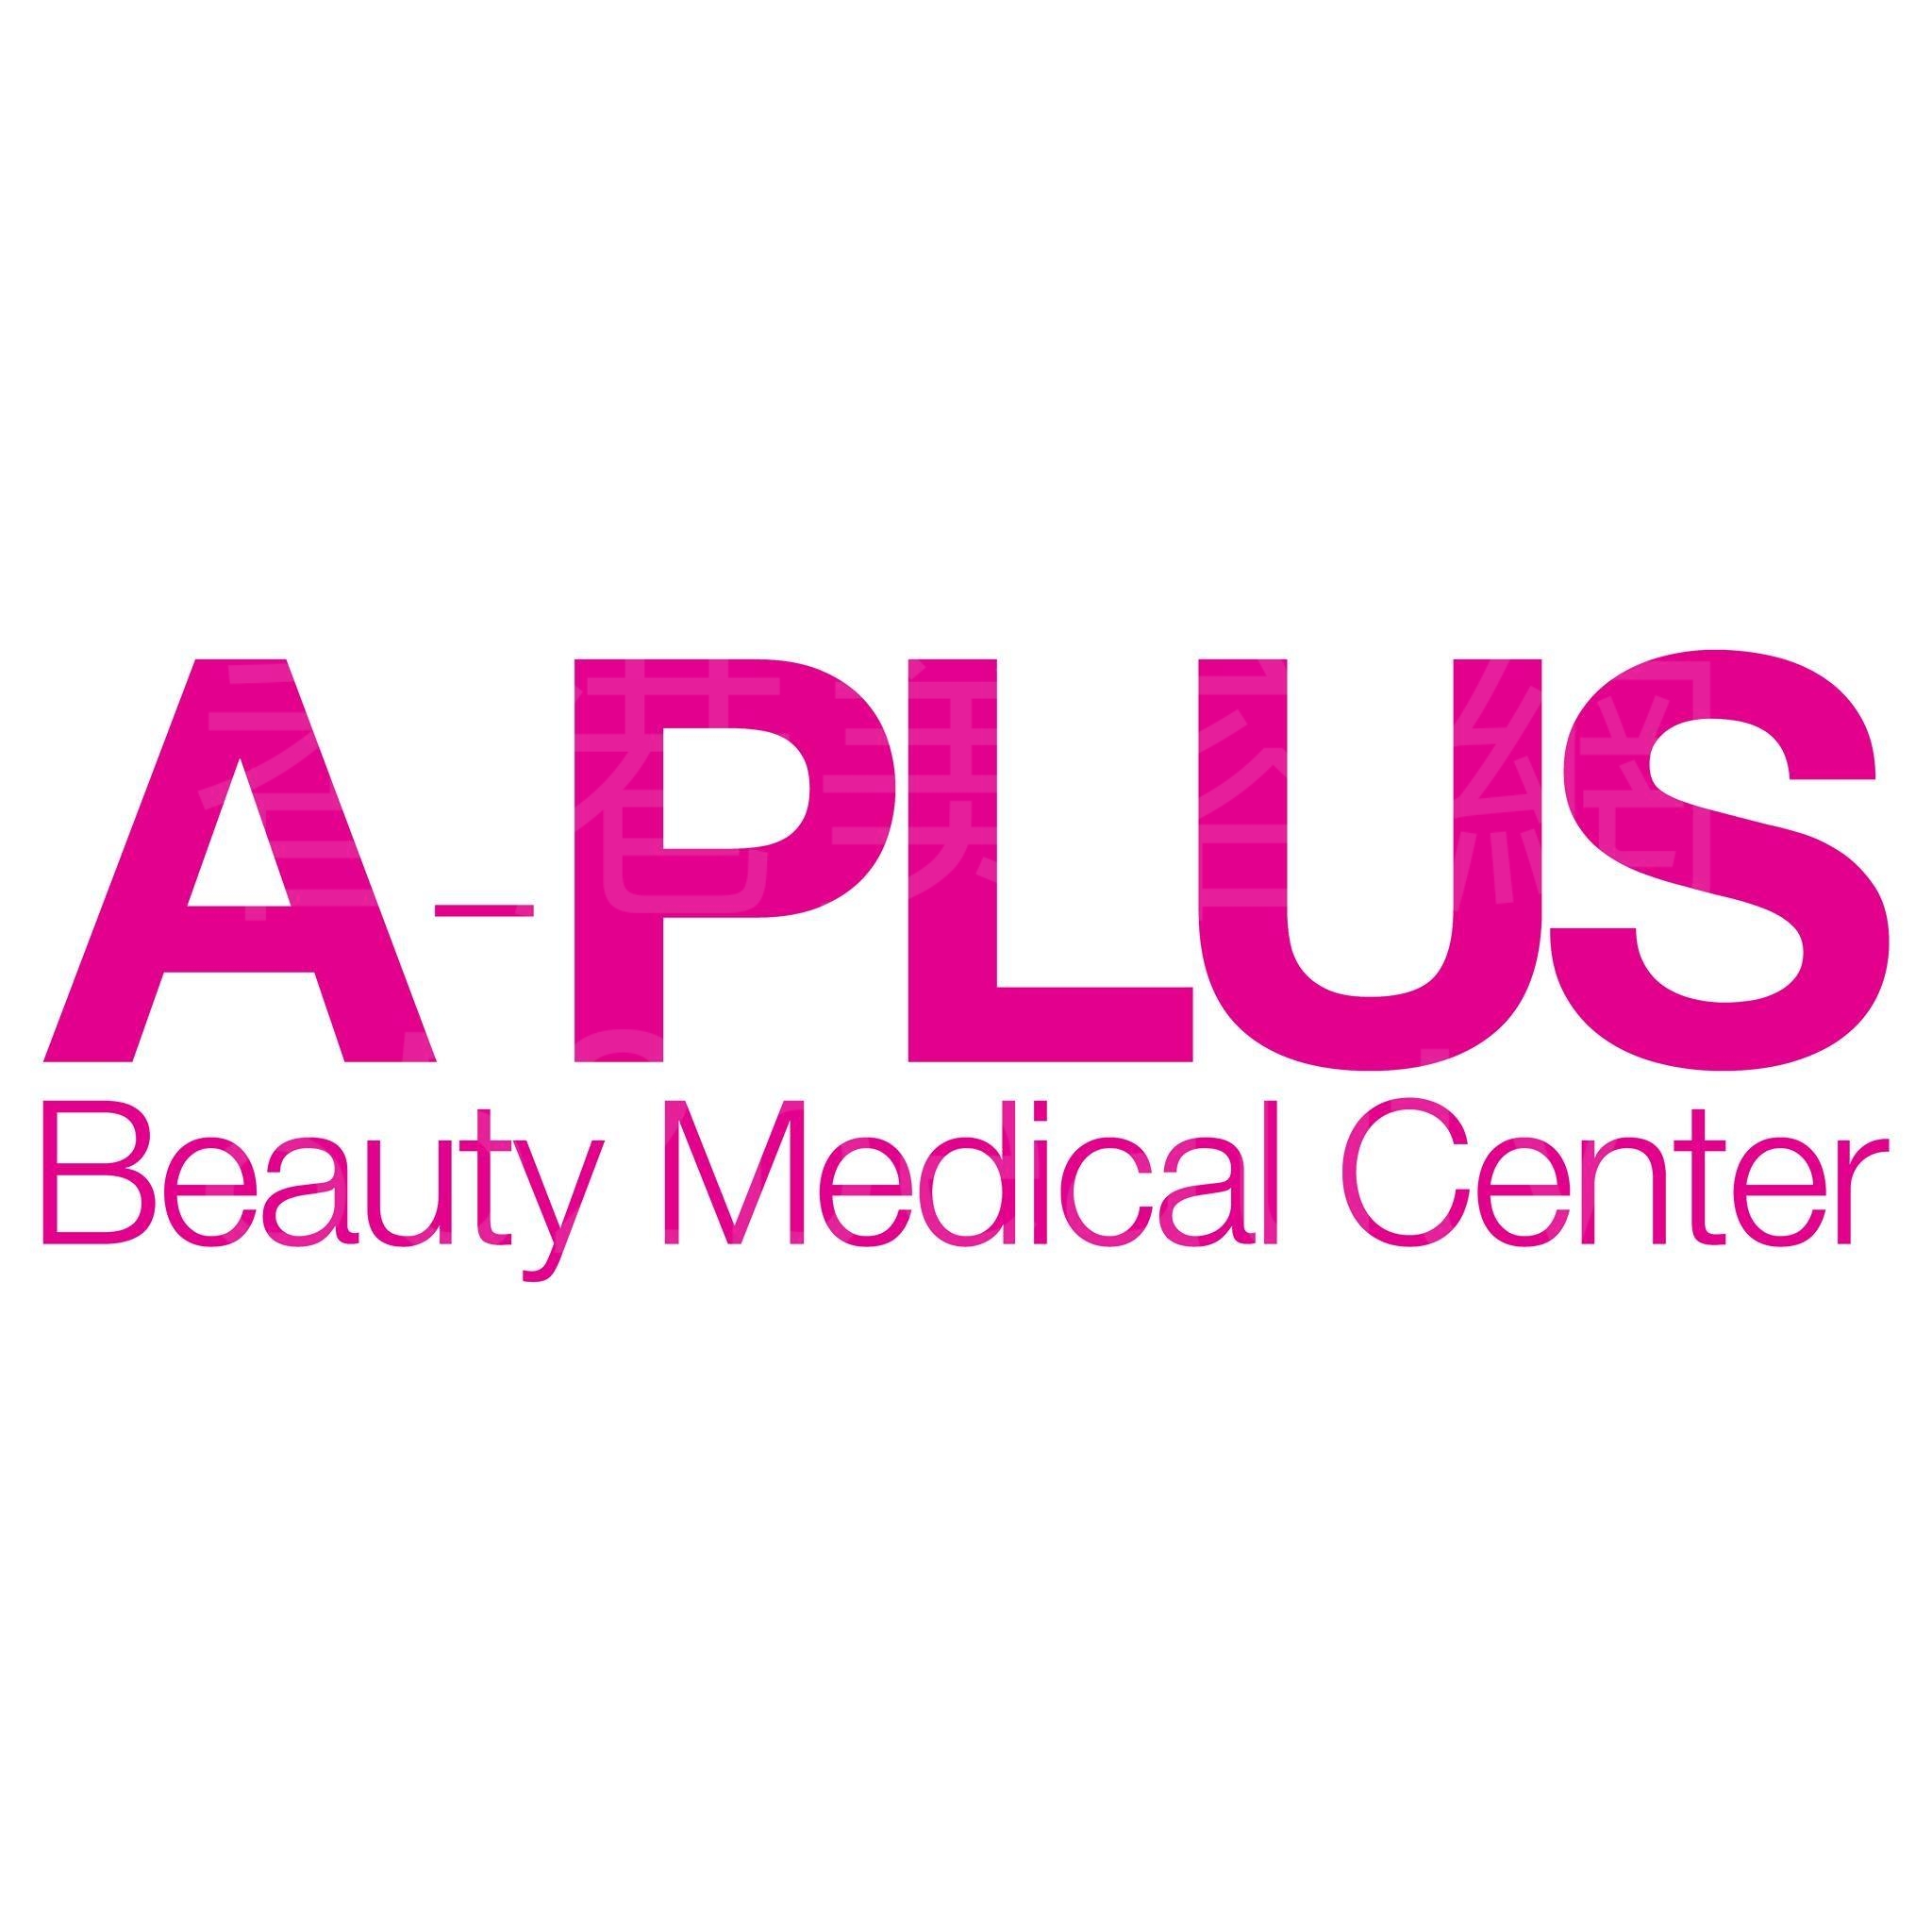 Medical Aesthetics: A-Plus Beauty Medical Center 醫學美容中心 (尖沙咀店)